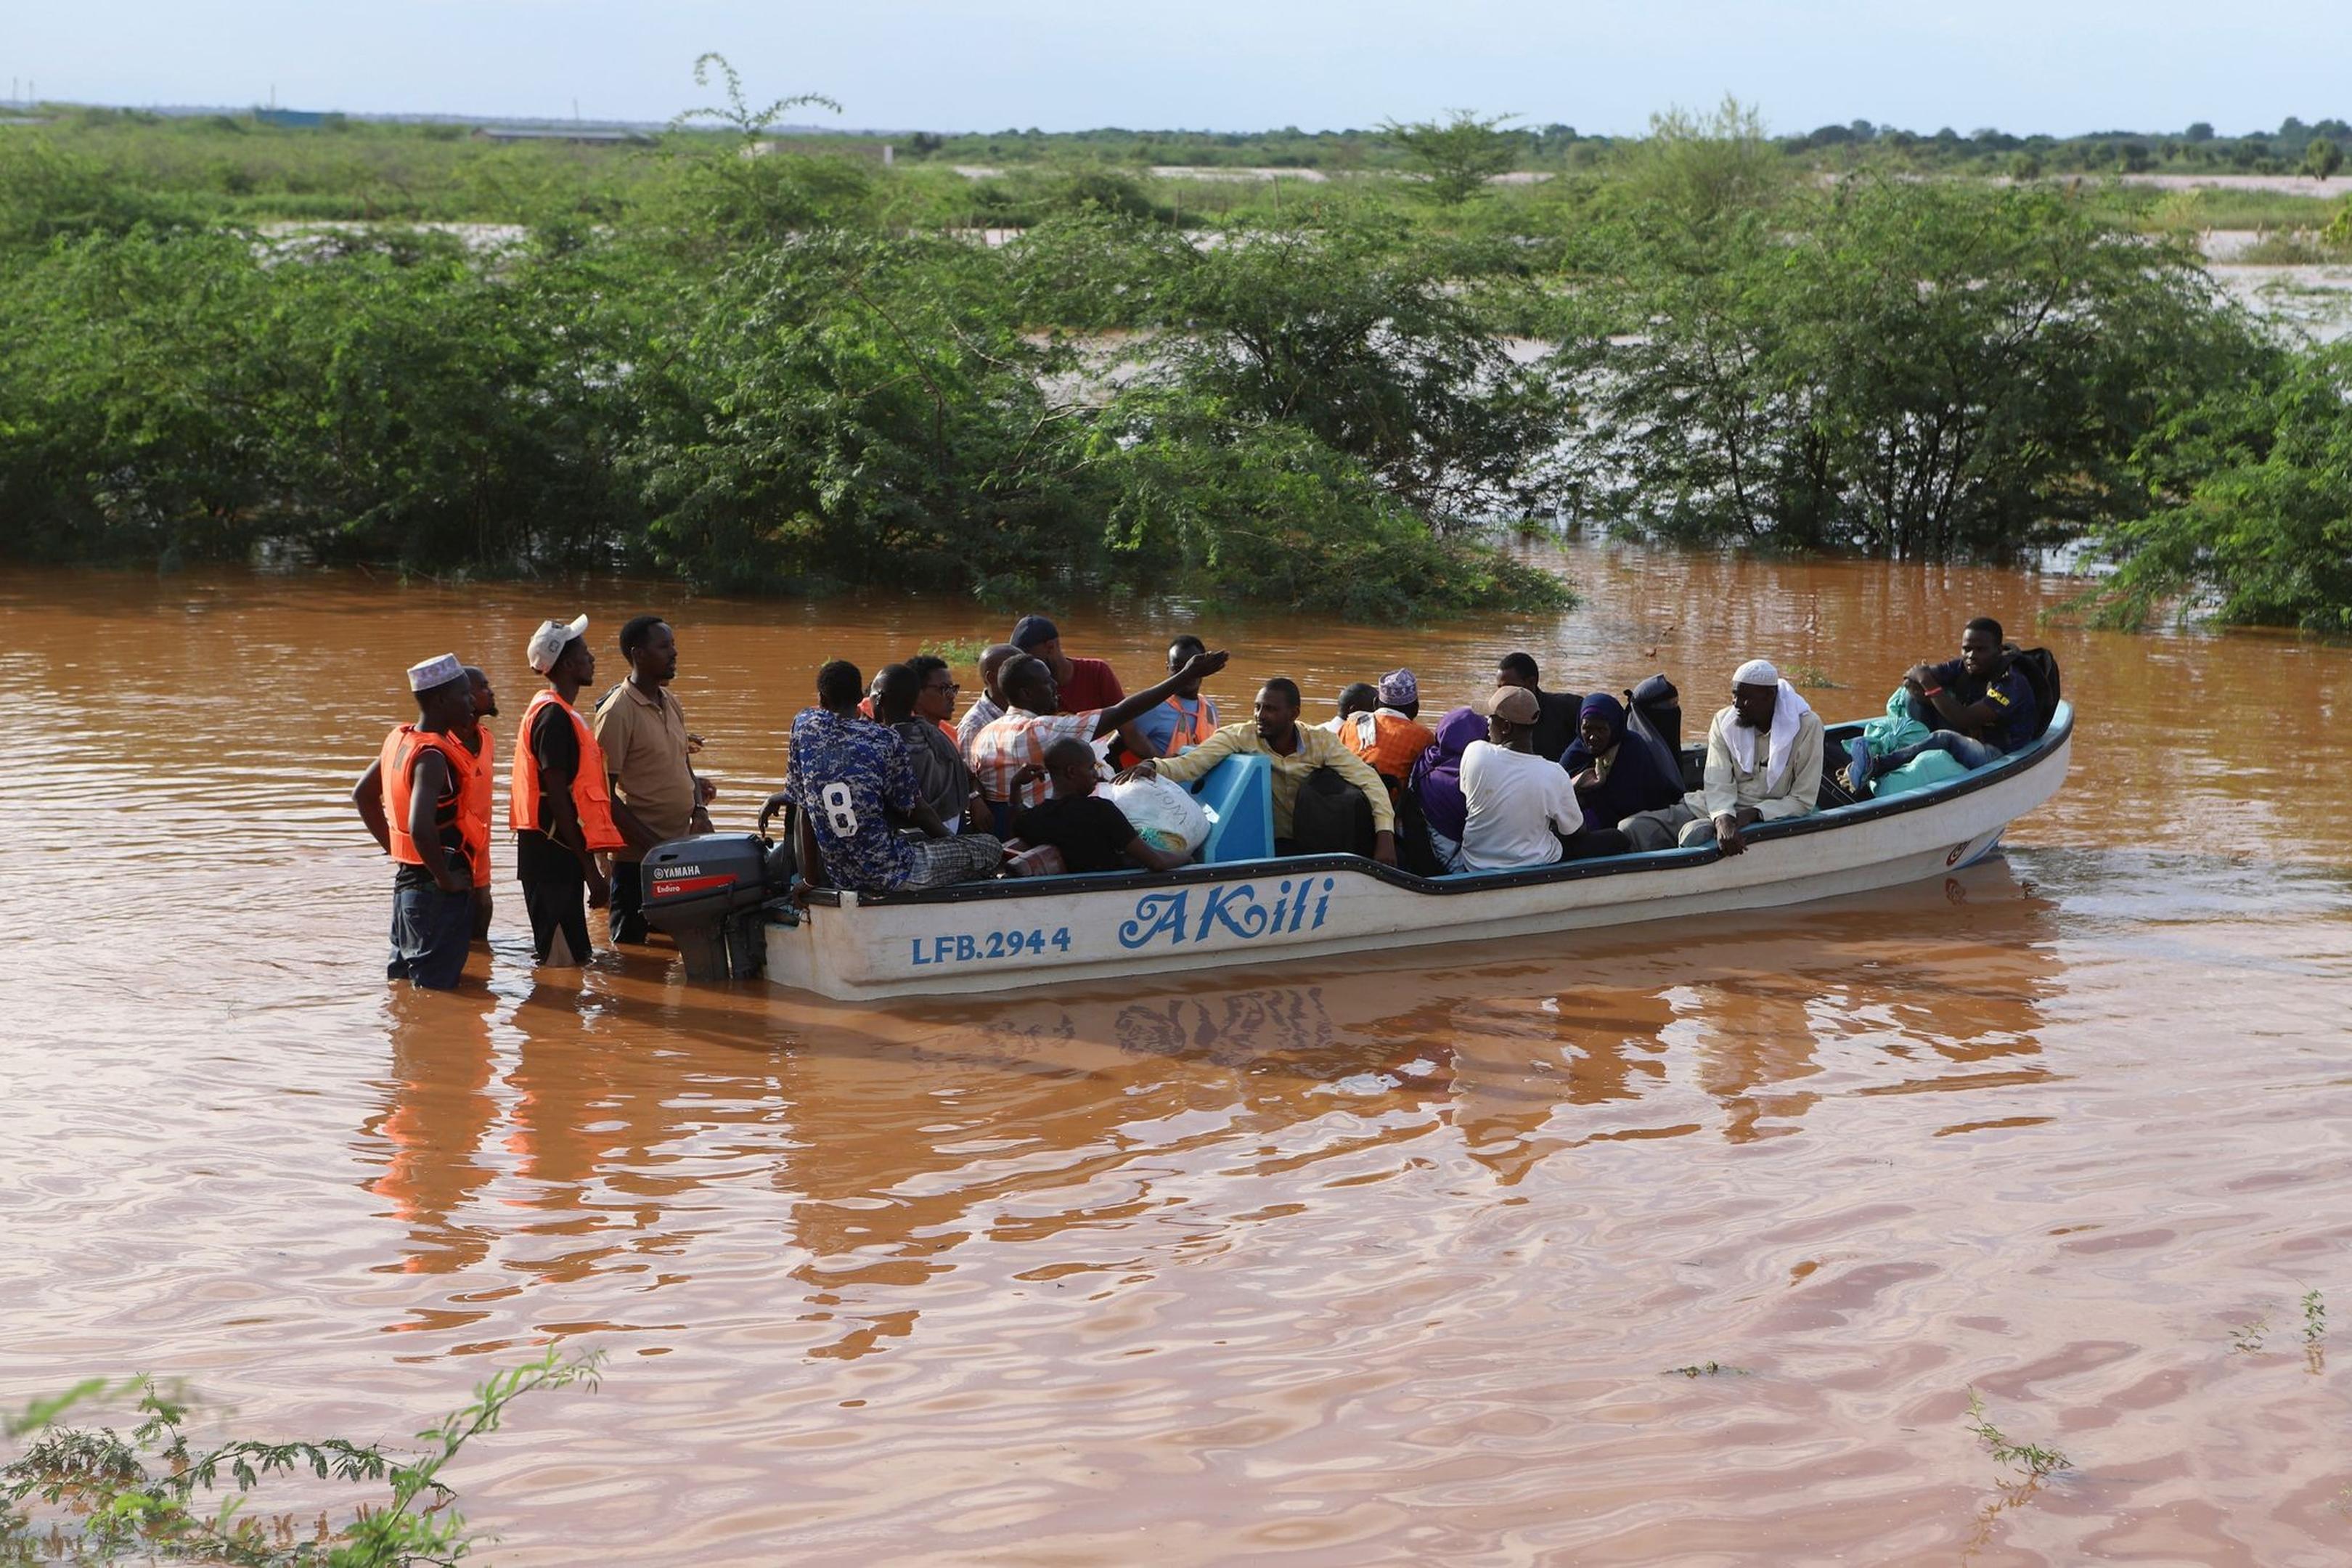 Ein überflutetes Gebiet in Kenia. Für die kommenden Tage sind weitere schwere Regenfälle angekündigt.